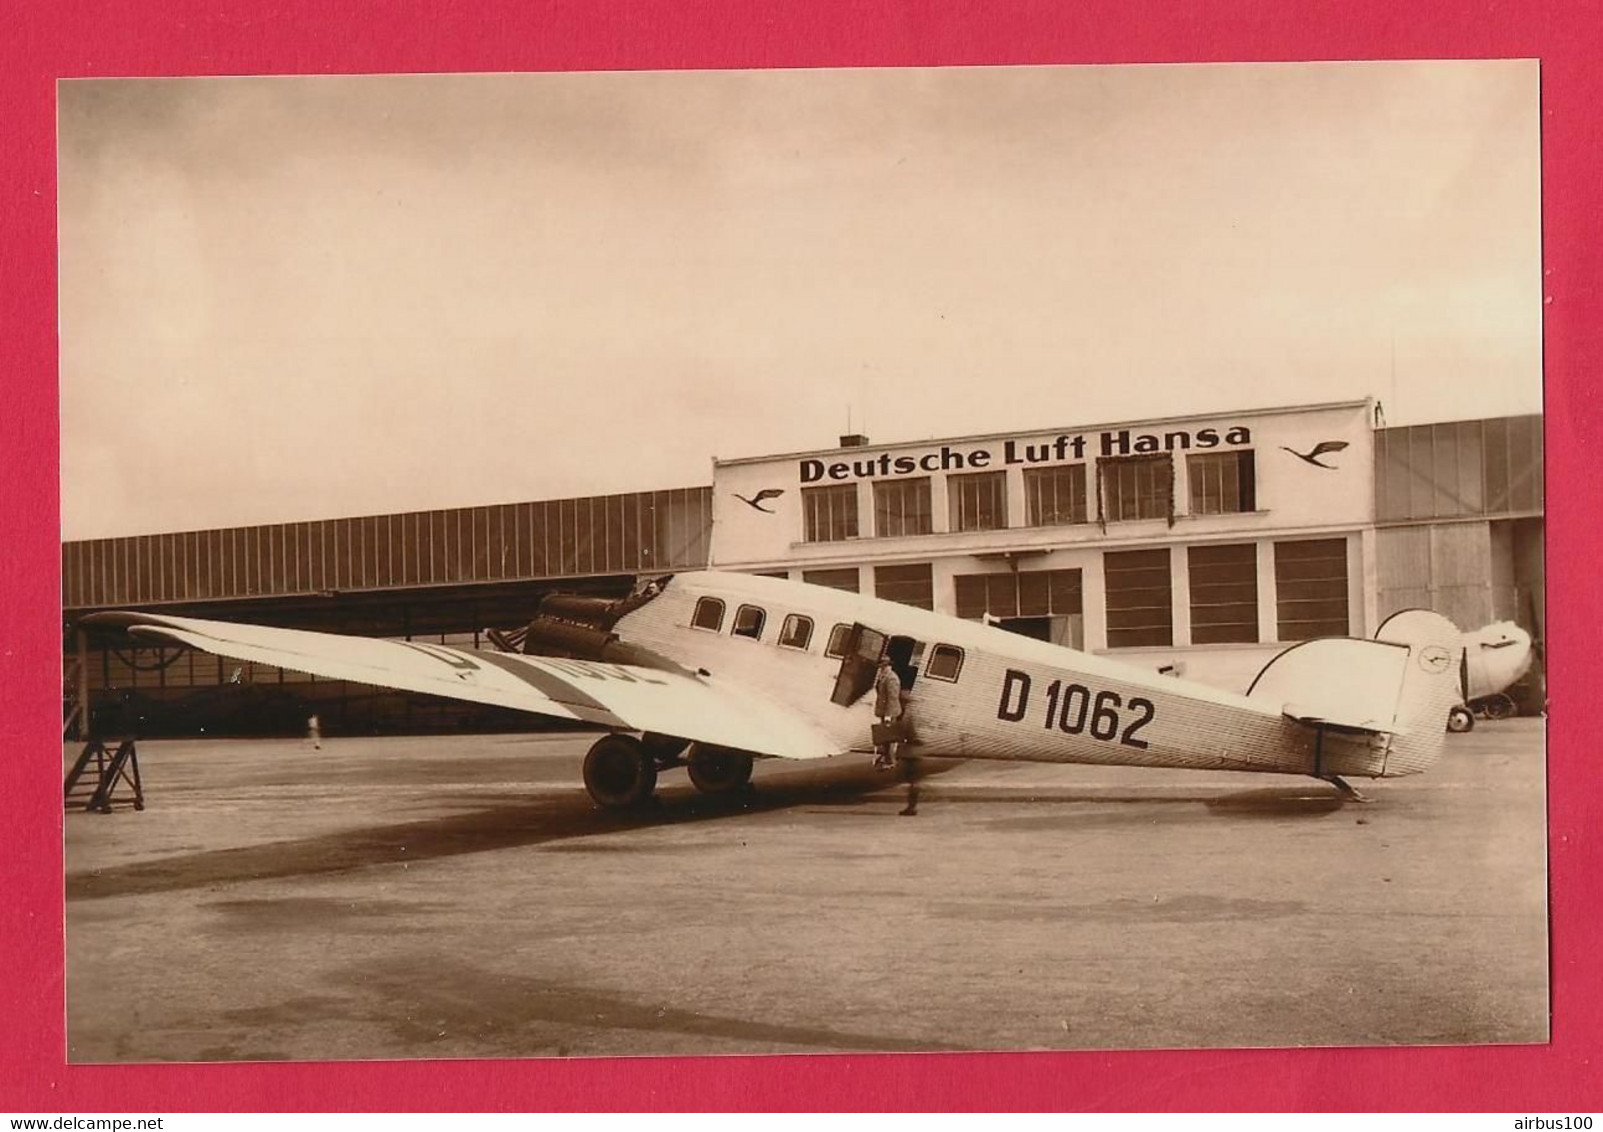 BELLE PHOTO REPRODUCTION AVION PLANE FLUGZEUG - JUNKER D 1062 DEUTCHE LUFT HANSA AIRPORT - Aviation